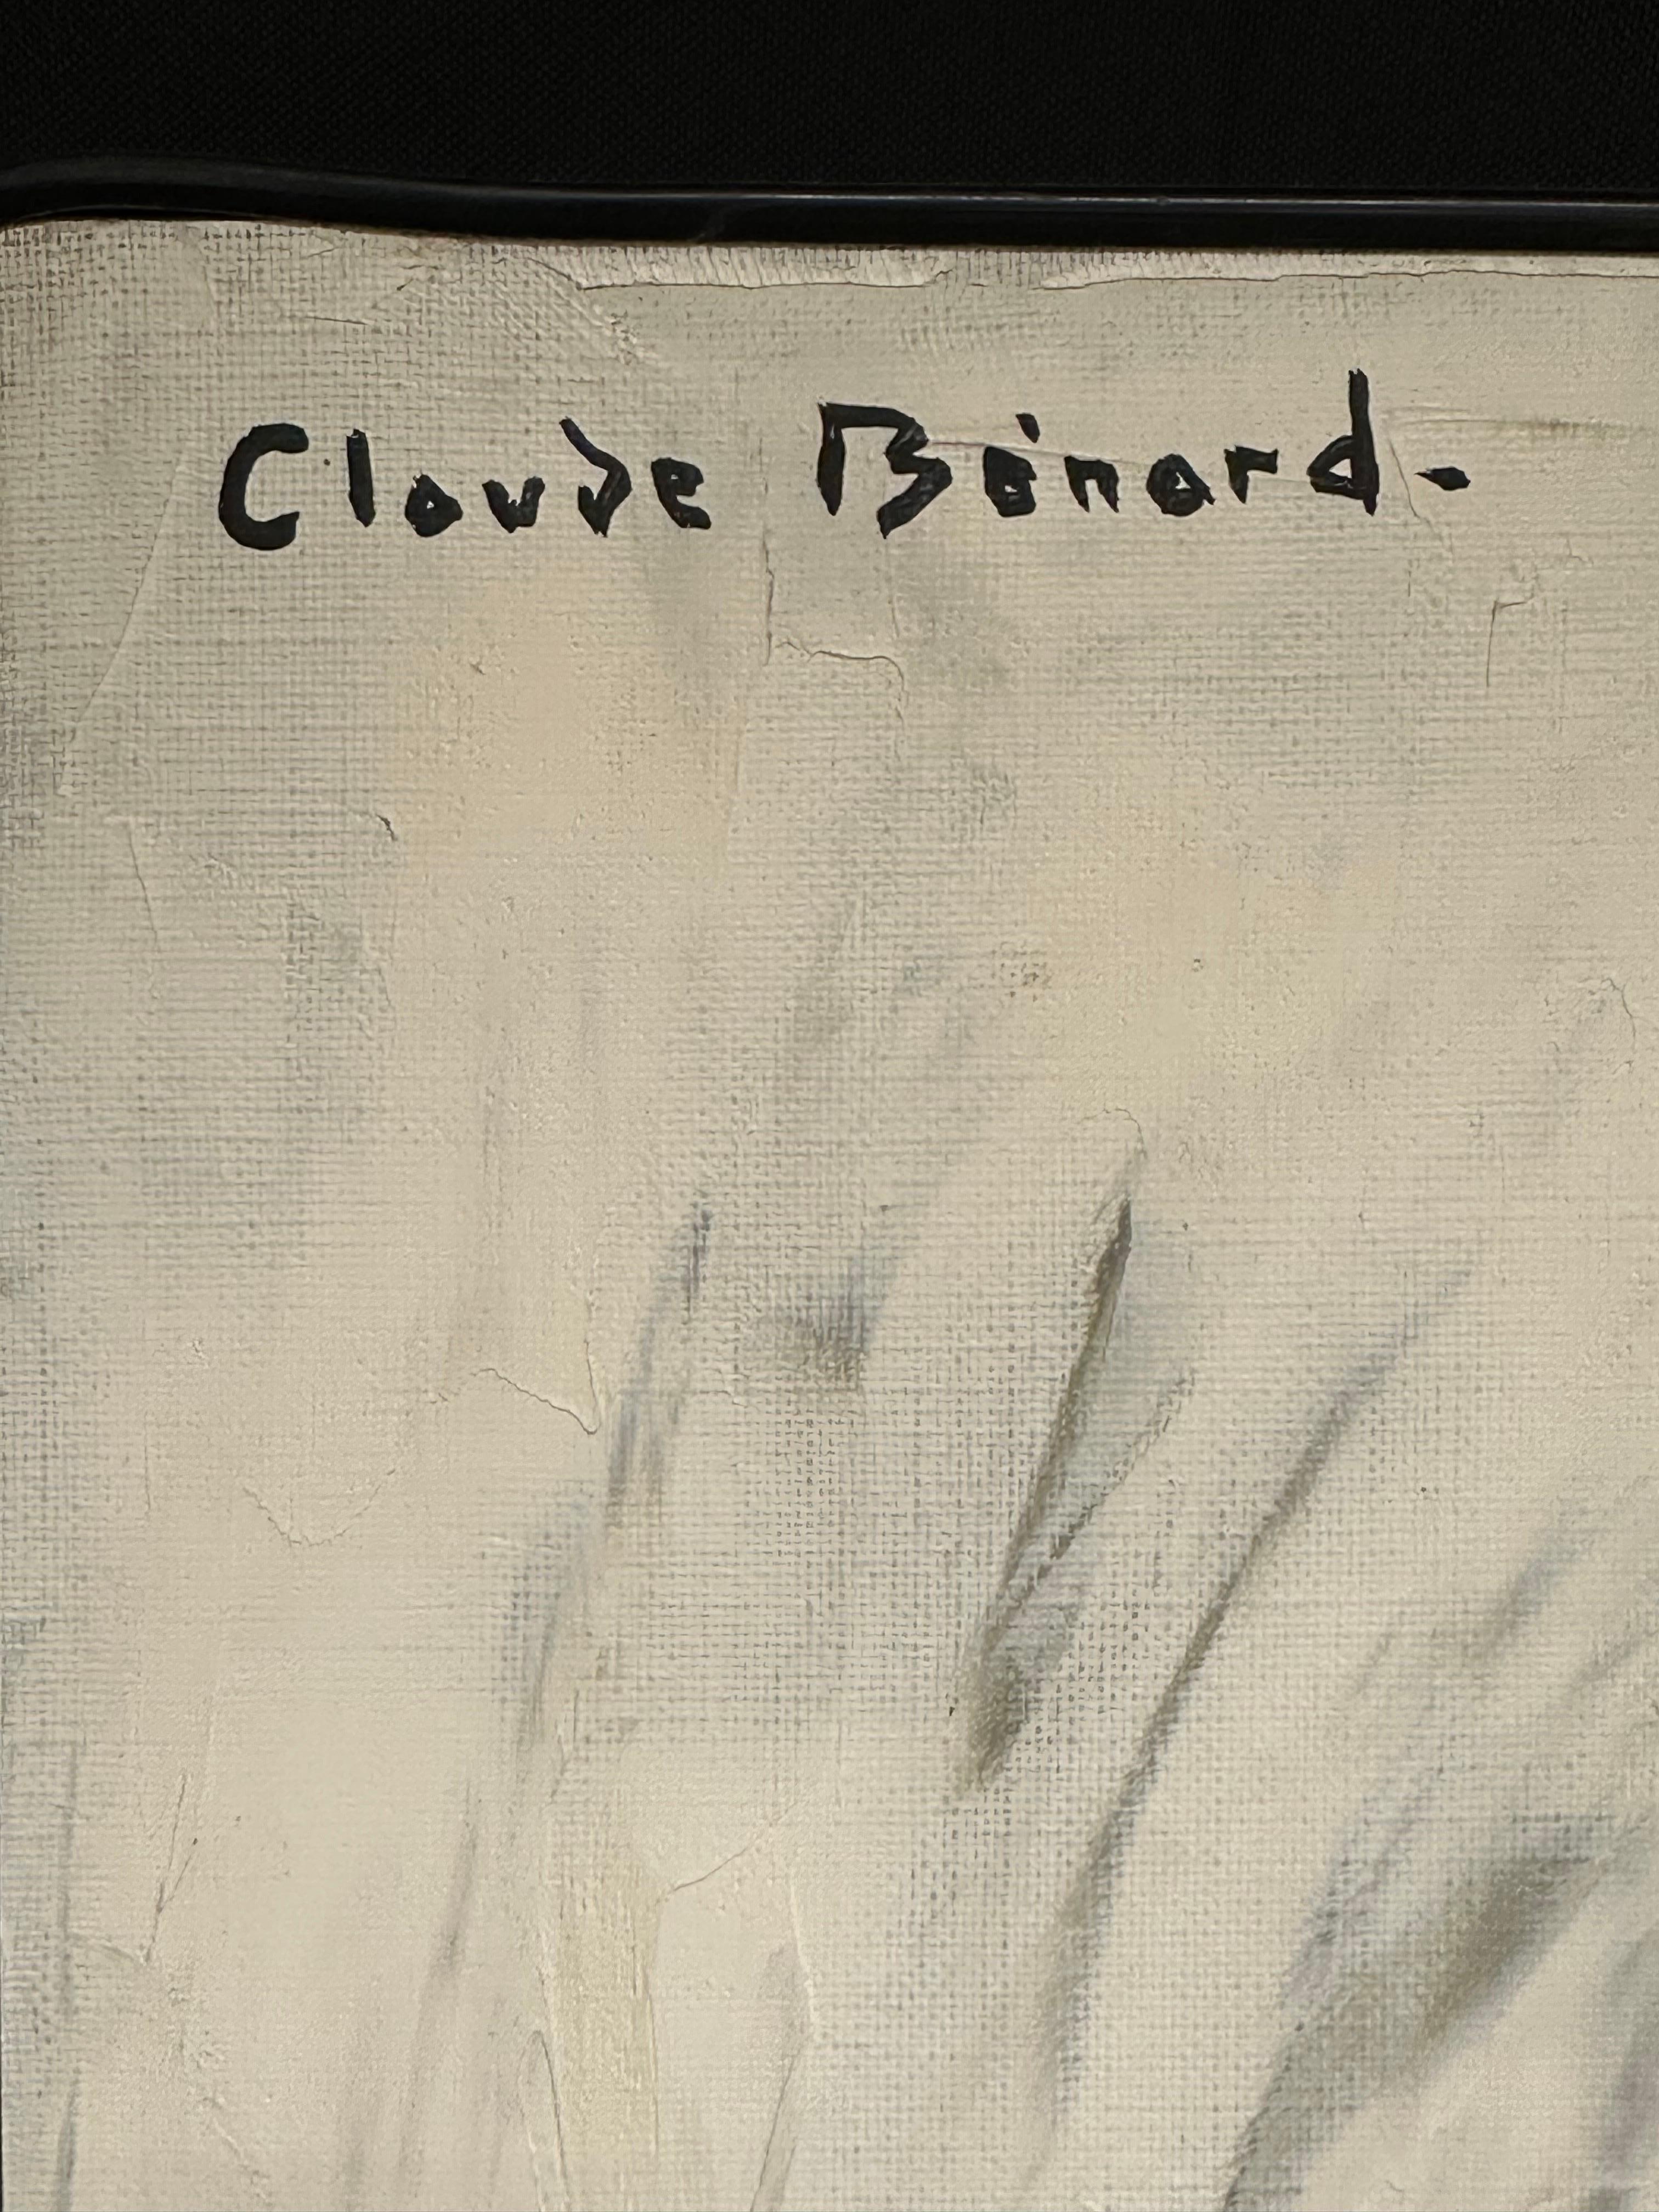 Claude Benard (1926-2016, Franzose), unterzeichnet
Porträt einer modischen jungen Dame
Ölgemälde auf Leinwand, ungerahmt, in der oberen Ecke signiert
Gemälde: 32 x 24 Zoll
Herkunft: Nachlass des Künstlers, Frankreich
Zustand: insgesamt sehr